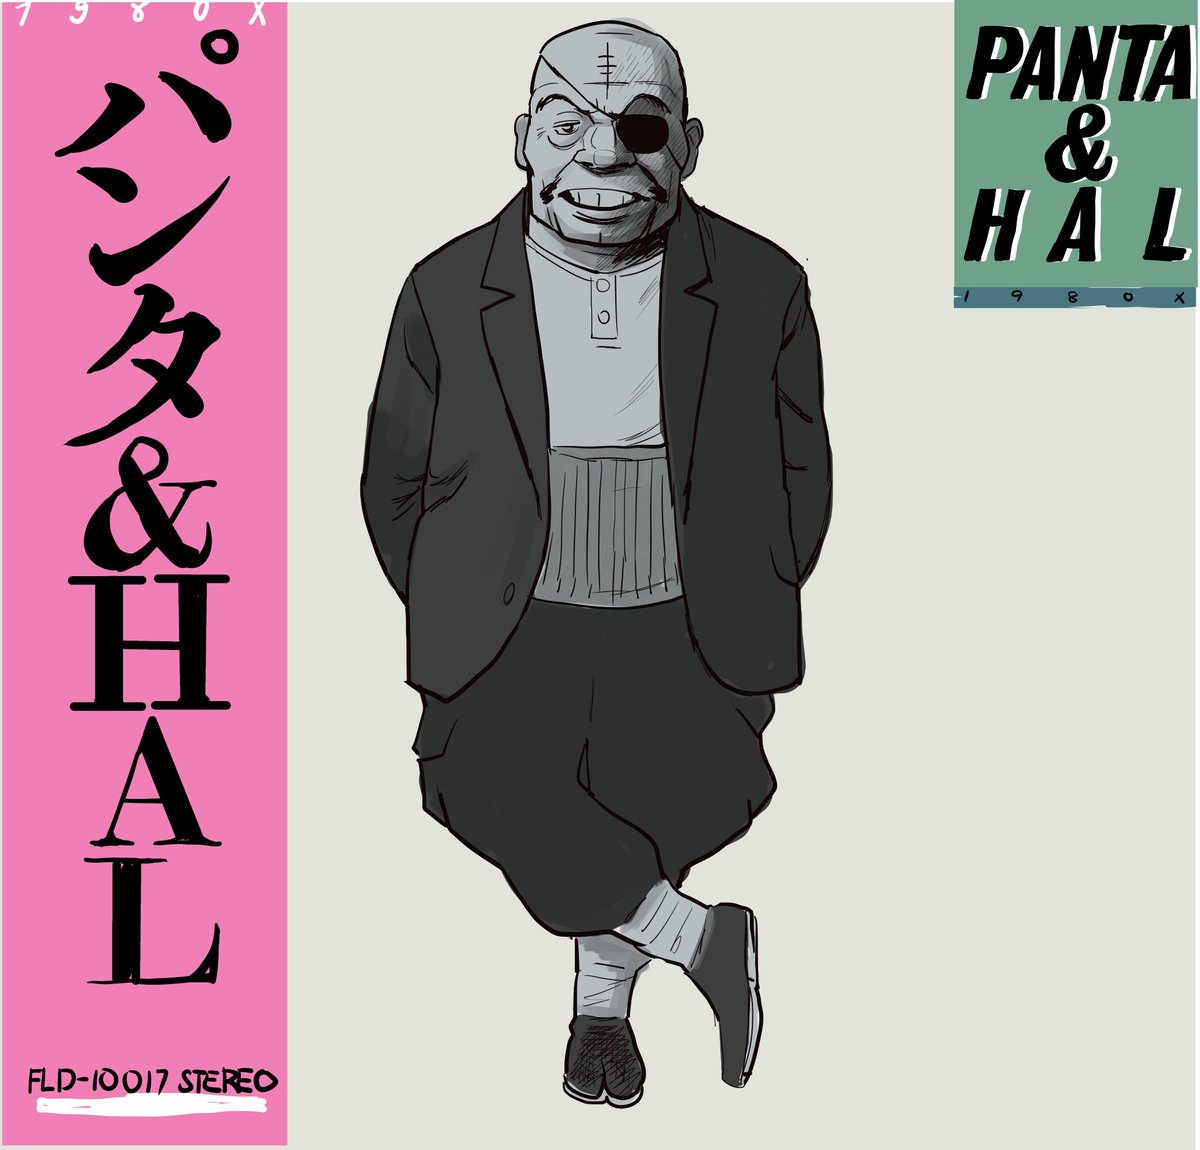 PANTA & HAL/1980X (1980)